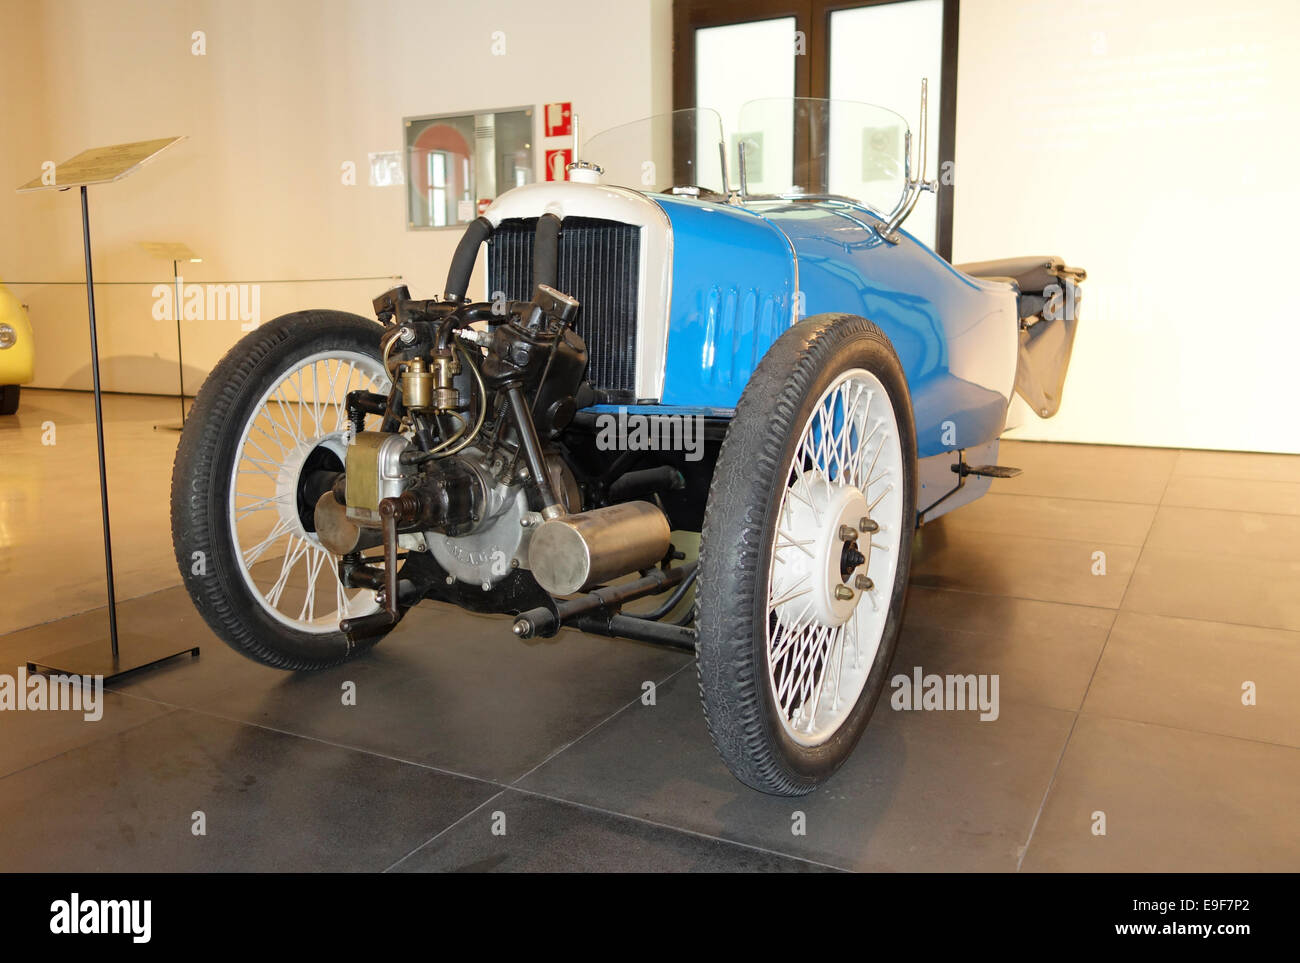 1928 Morgan à trois roues, voiture Automobile Museum de Málaga, Andalousie, espagne. Banque D'Images